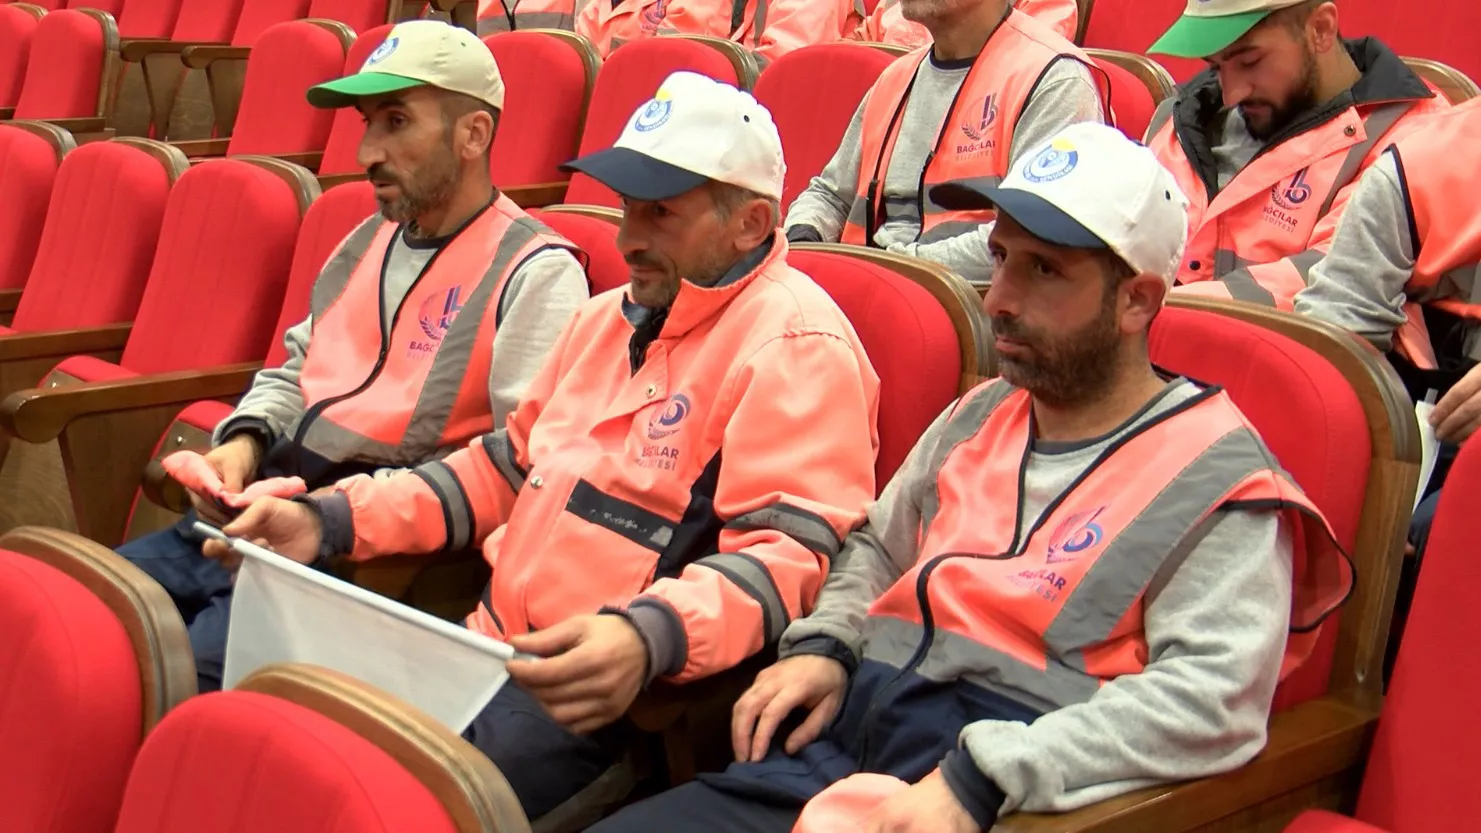 Bagcilar belediyesi toplu is sozlesmesine imza attib - yerel haberler - haberton